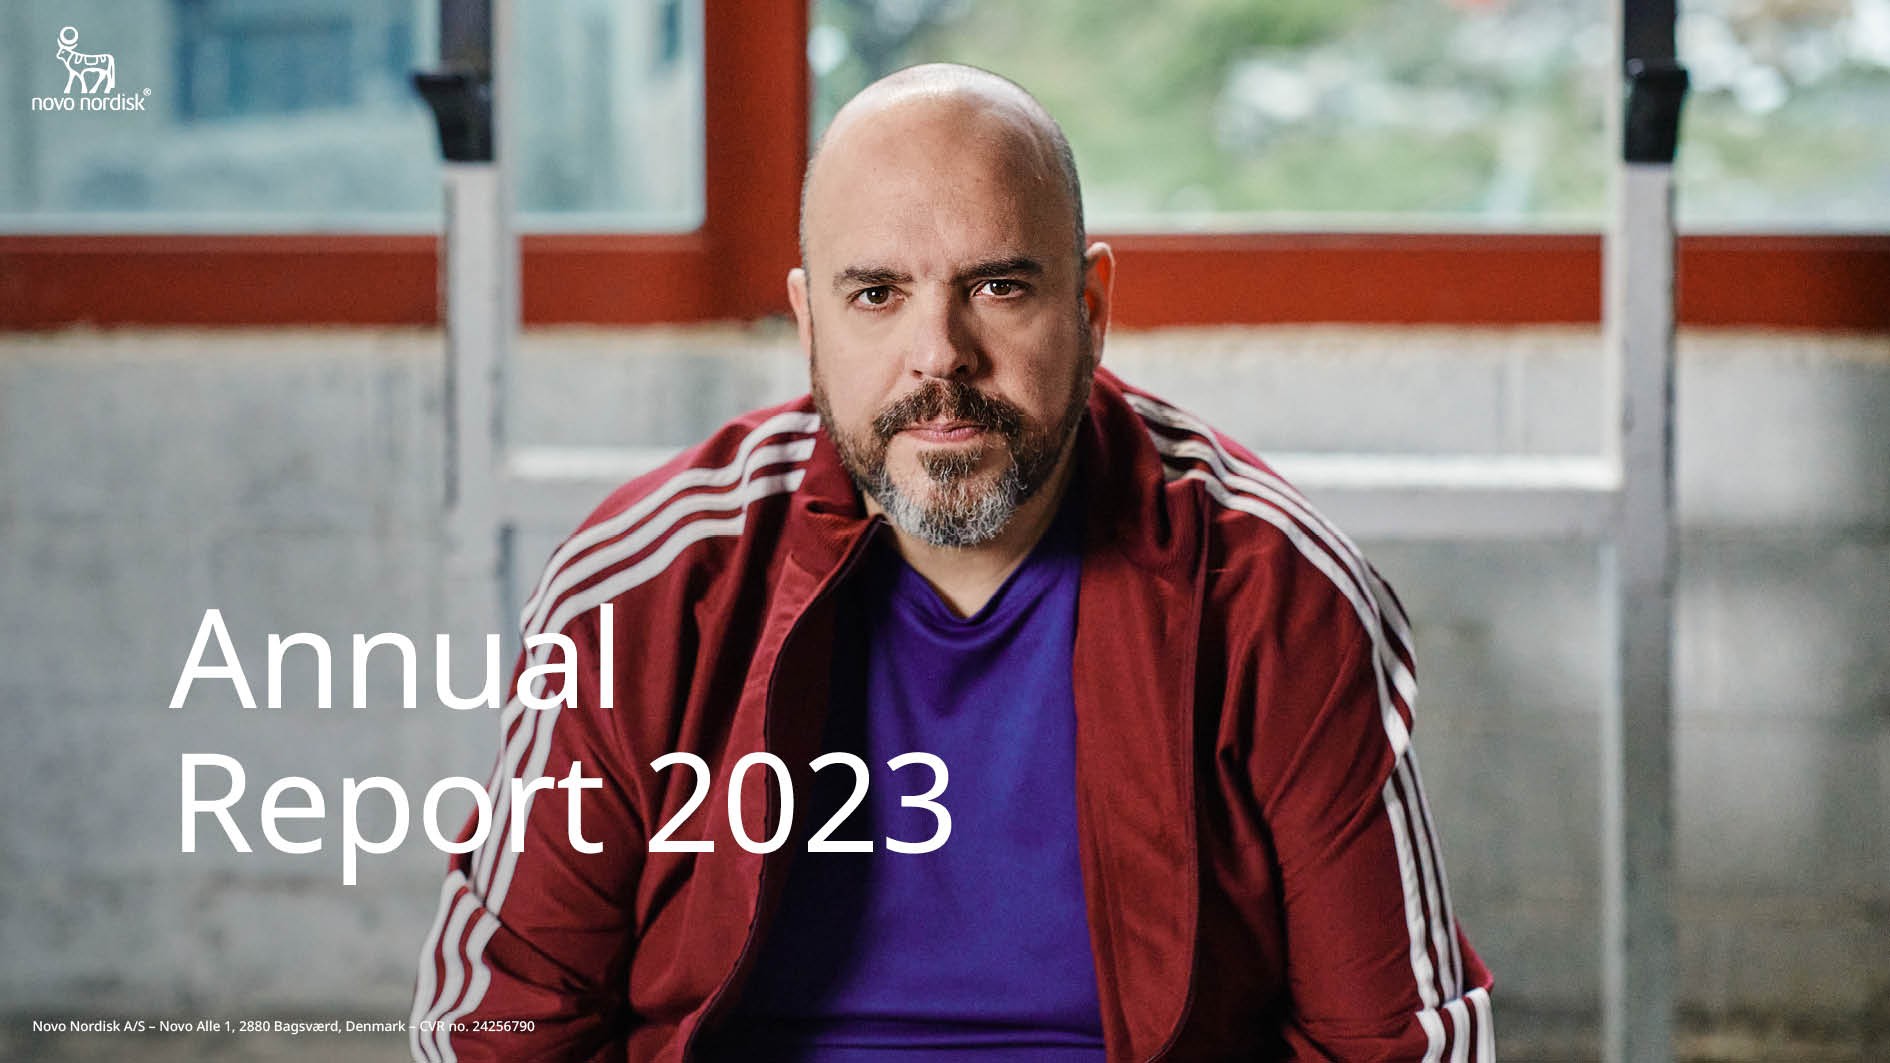 Novo Nordisk Annual Report 2023